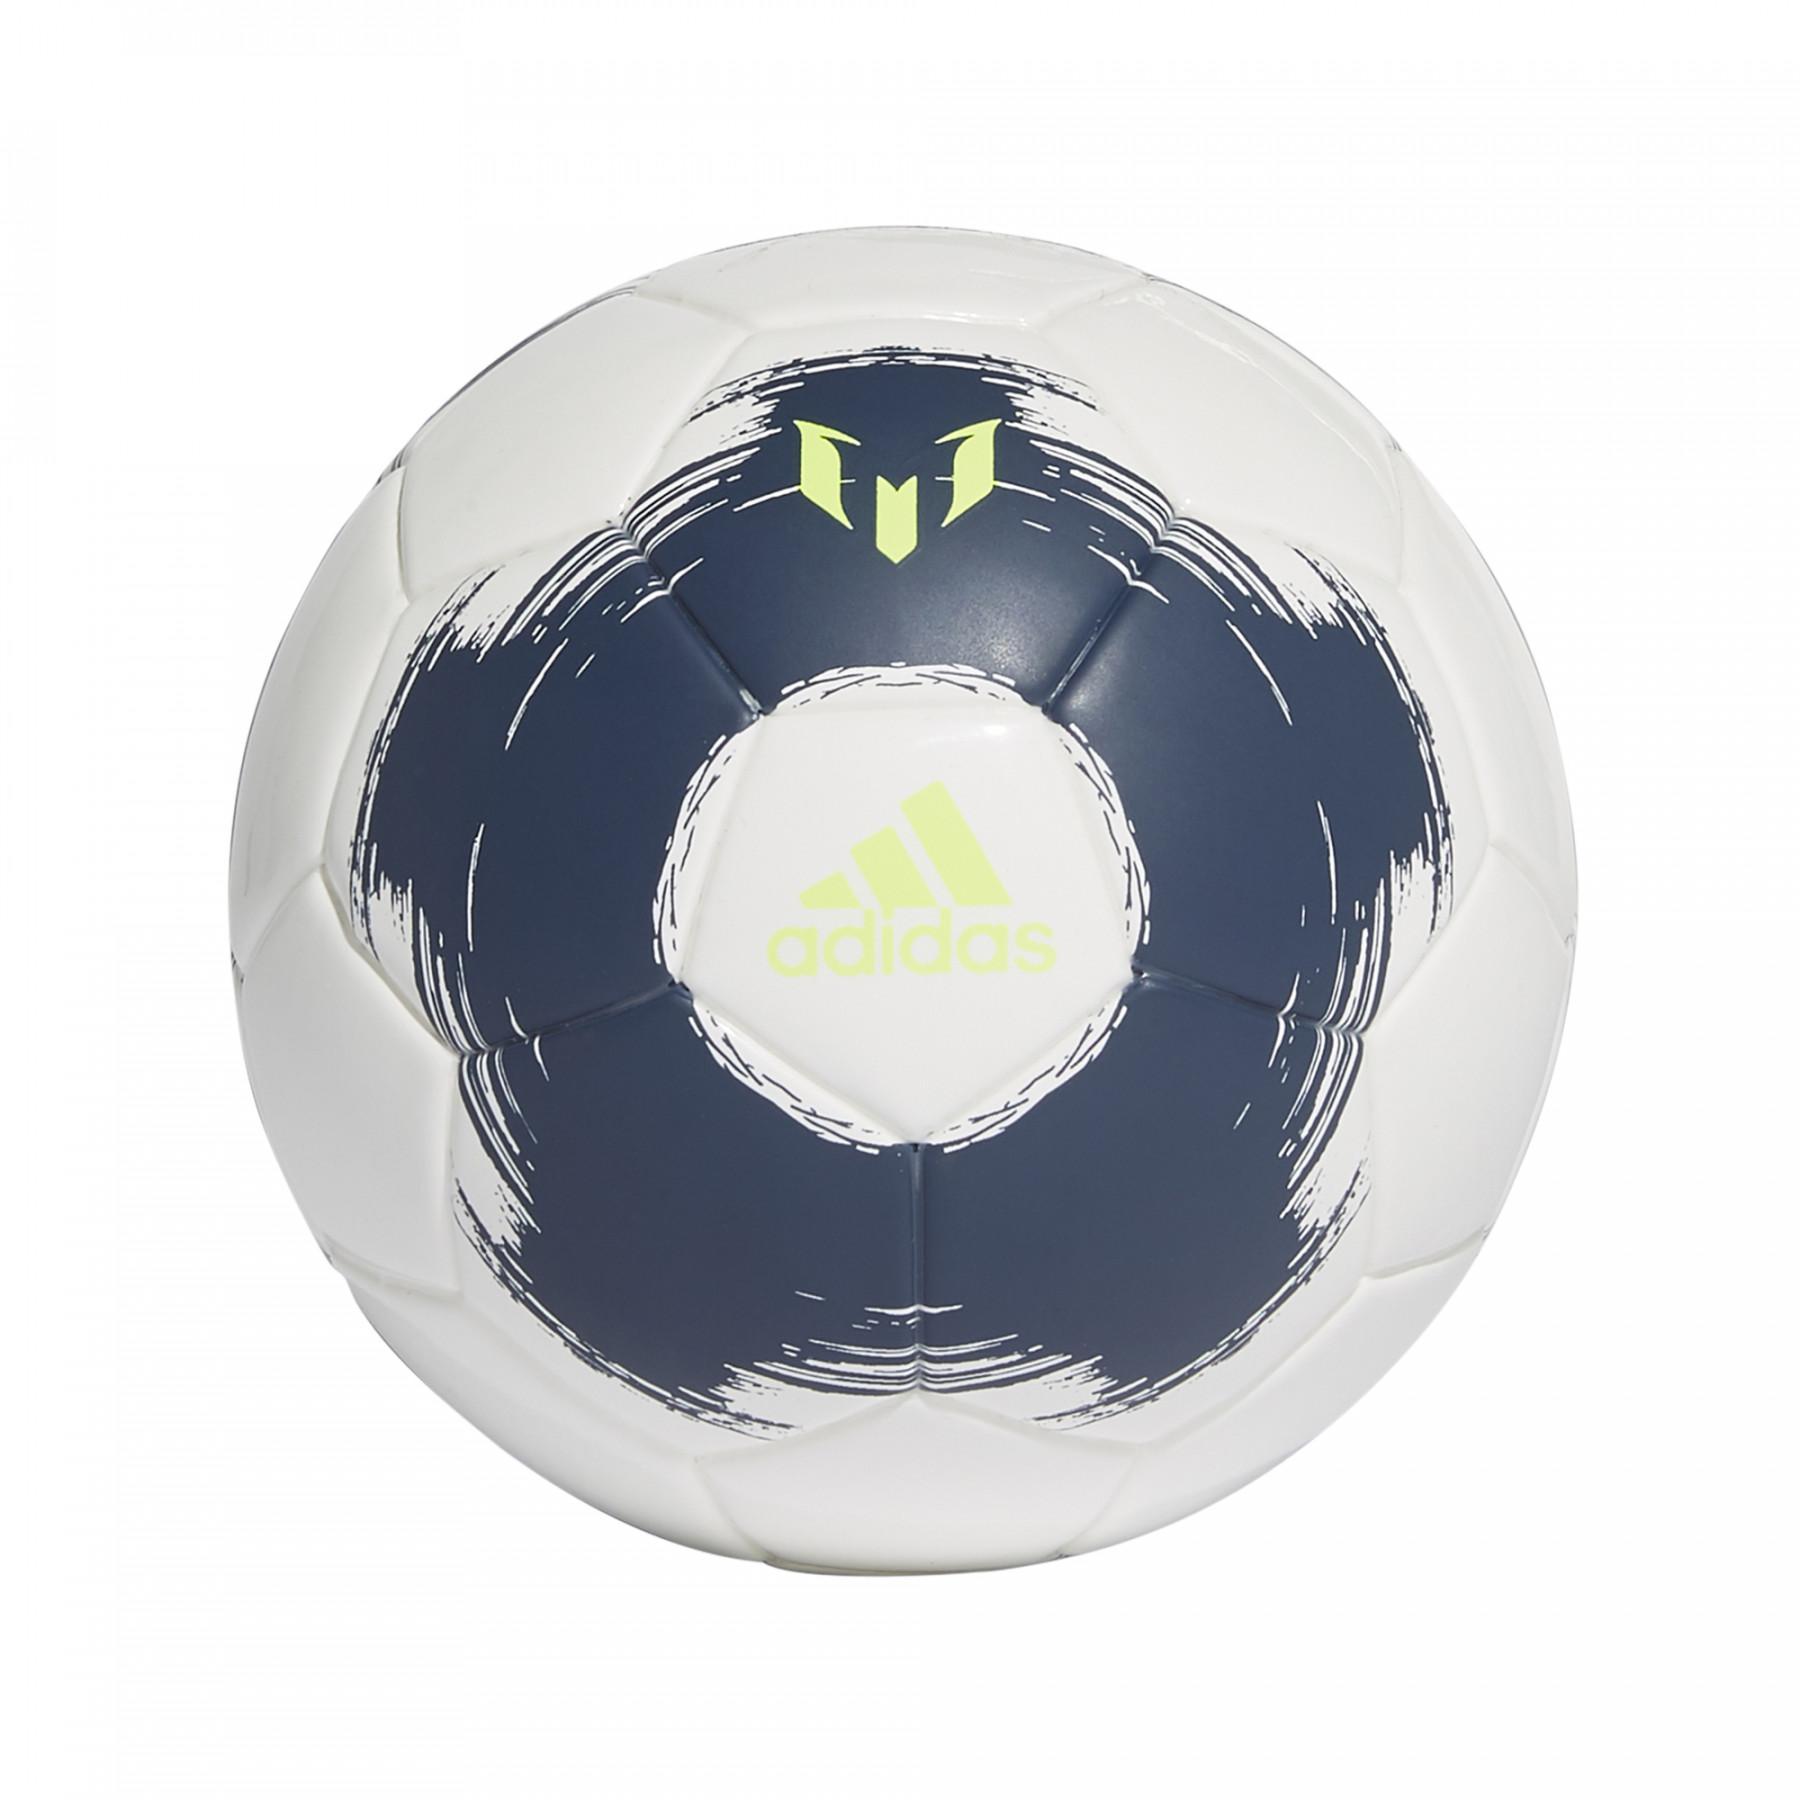 Ballon adidas Mini Messi